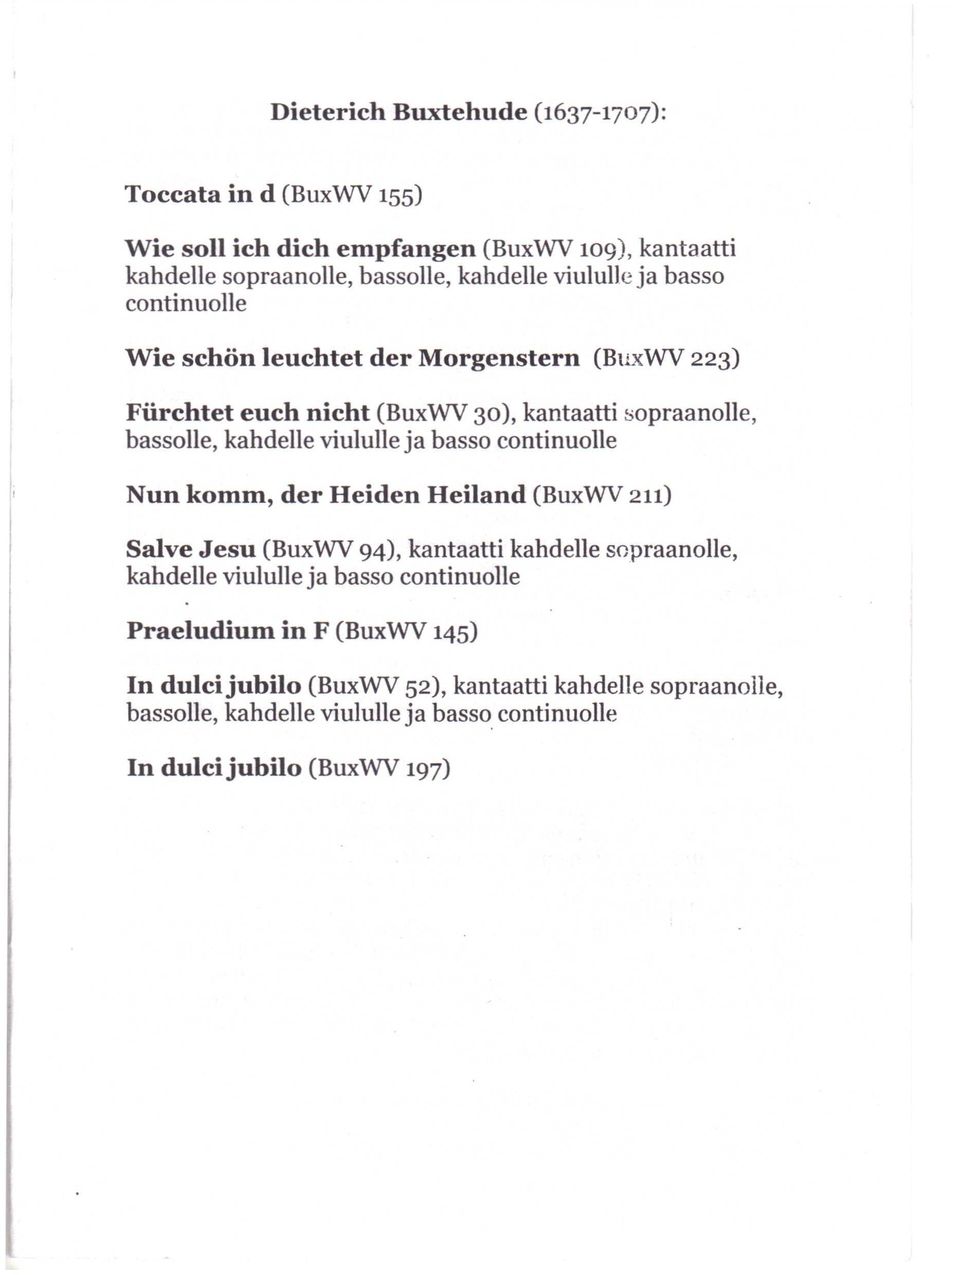 continuolle sopraanolle, Nun komm, der Heiden Heiland (BuxWV 211) Salve Jesu (BuxWV 94), kantaatti kahdelle sopraanolle, kahdelle viululle ja basso